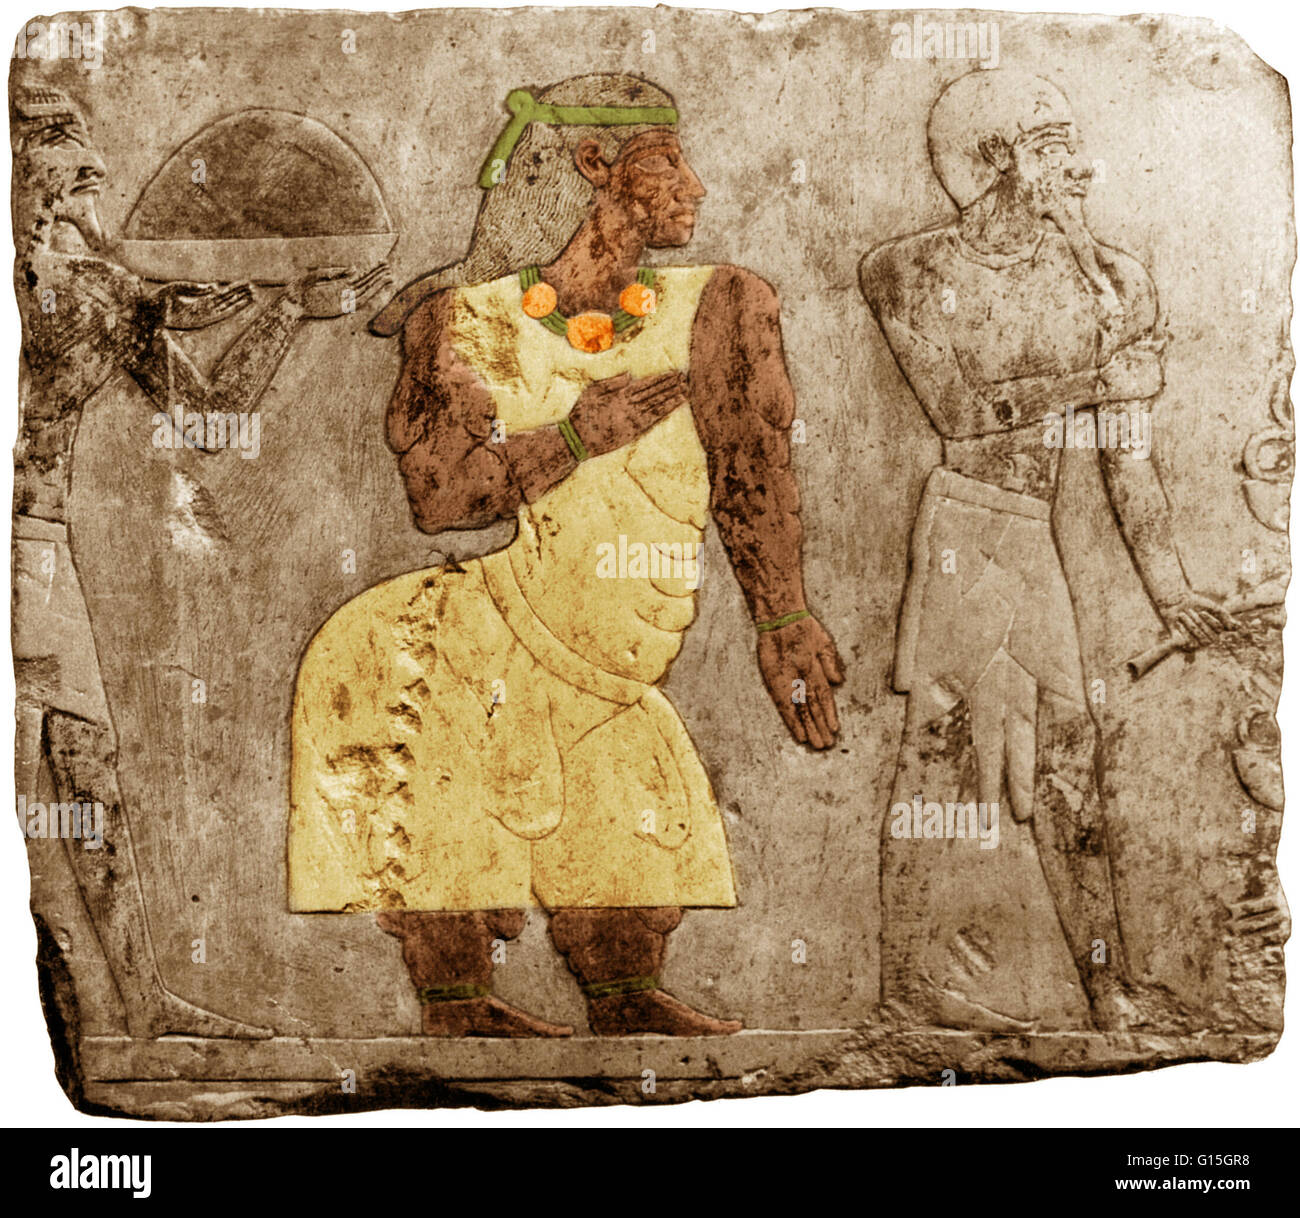 L'art de mur de l'ancienne Egypte (ch. 1480 avant J.-C.) montrant une figure (ici en couleur) souffrant de dystrophie musculaire. Certaines sources l'identifier comme la reine Hatshepsout, flanqué de deux esclaves. Banque D'Images